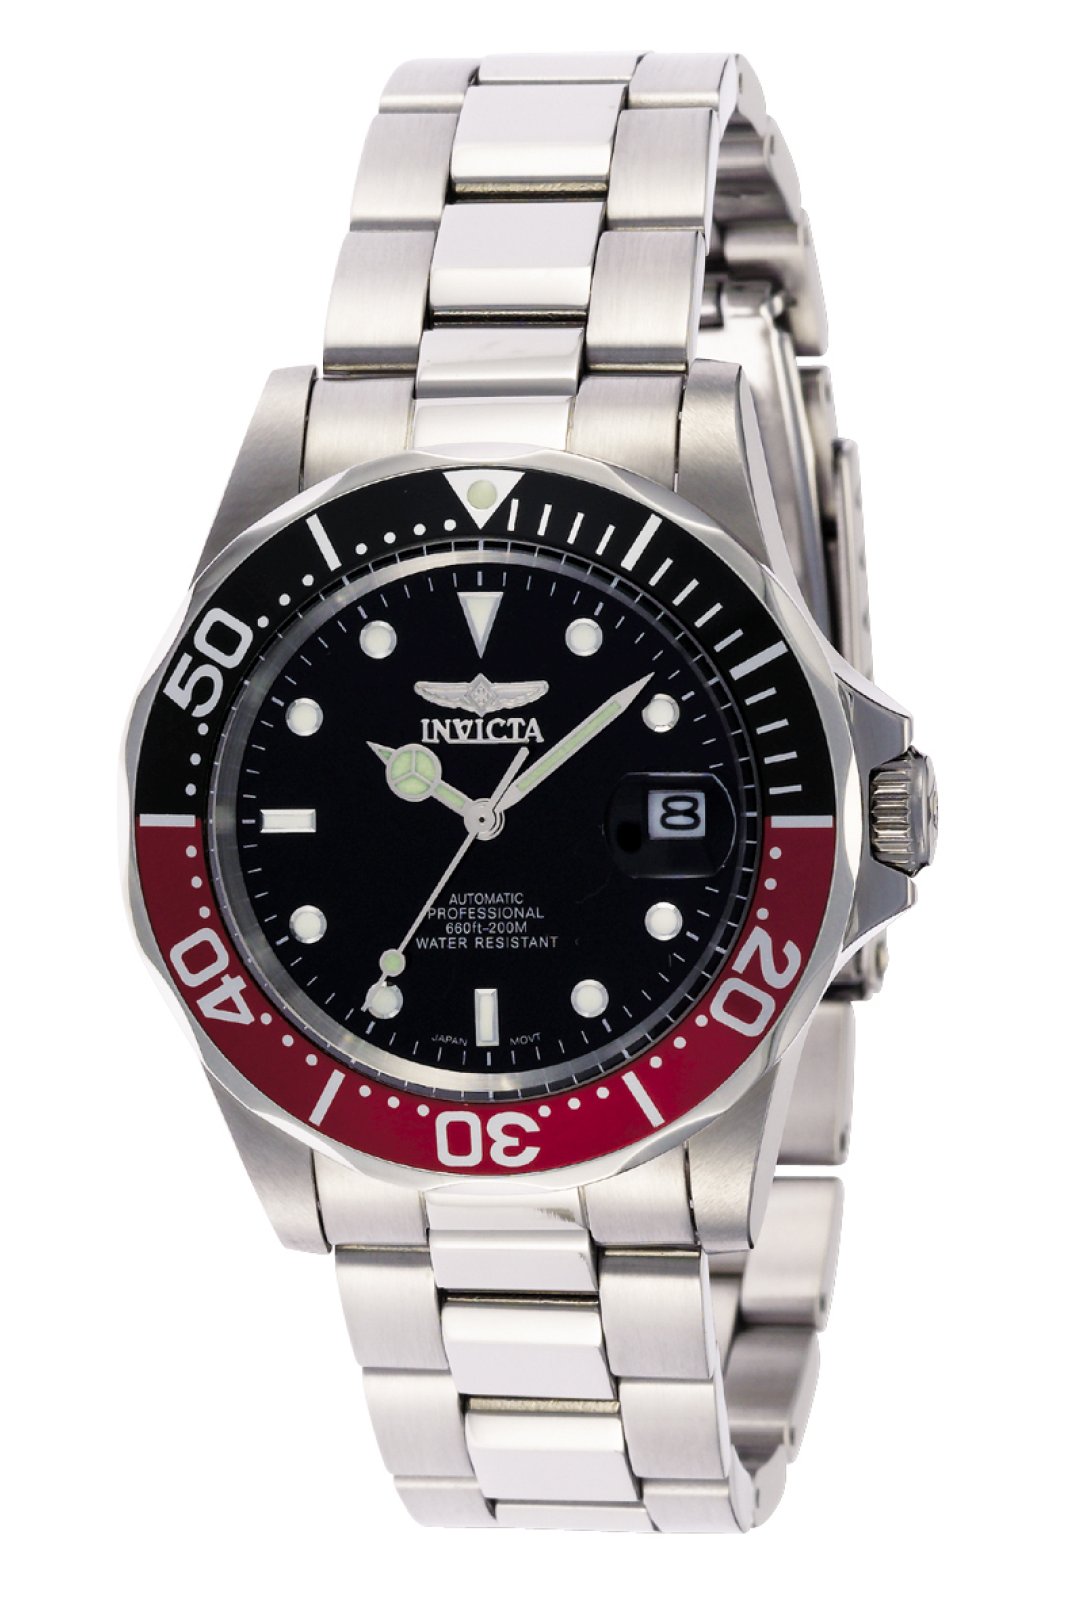 Invicta Pro Diver 9403 Men's Automatic Watch - 40mm